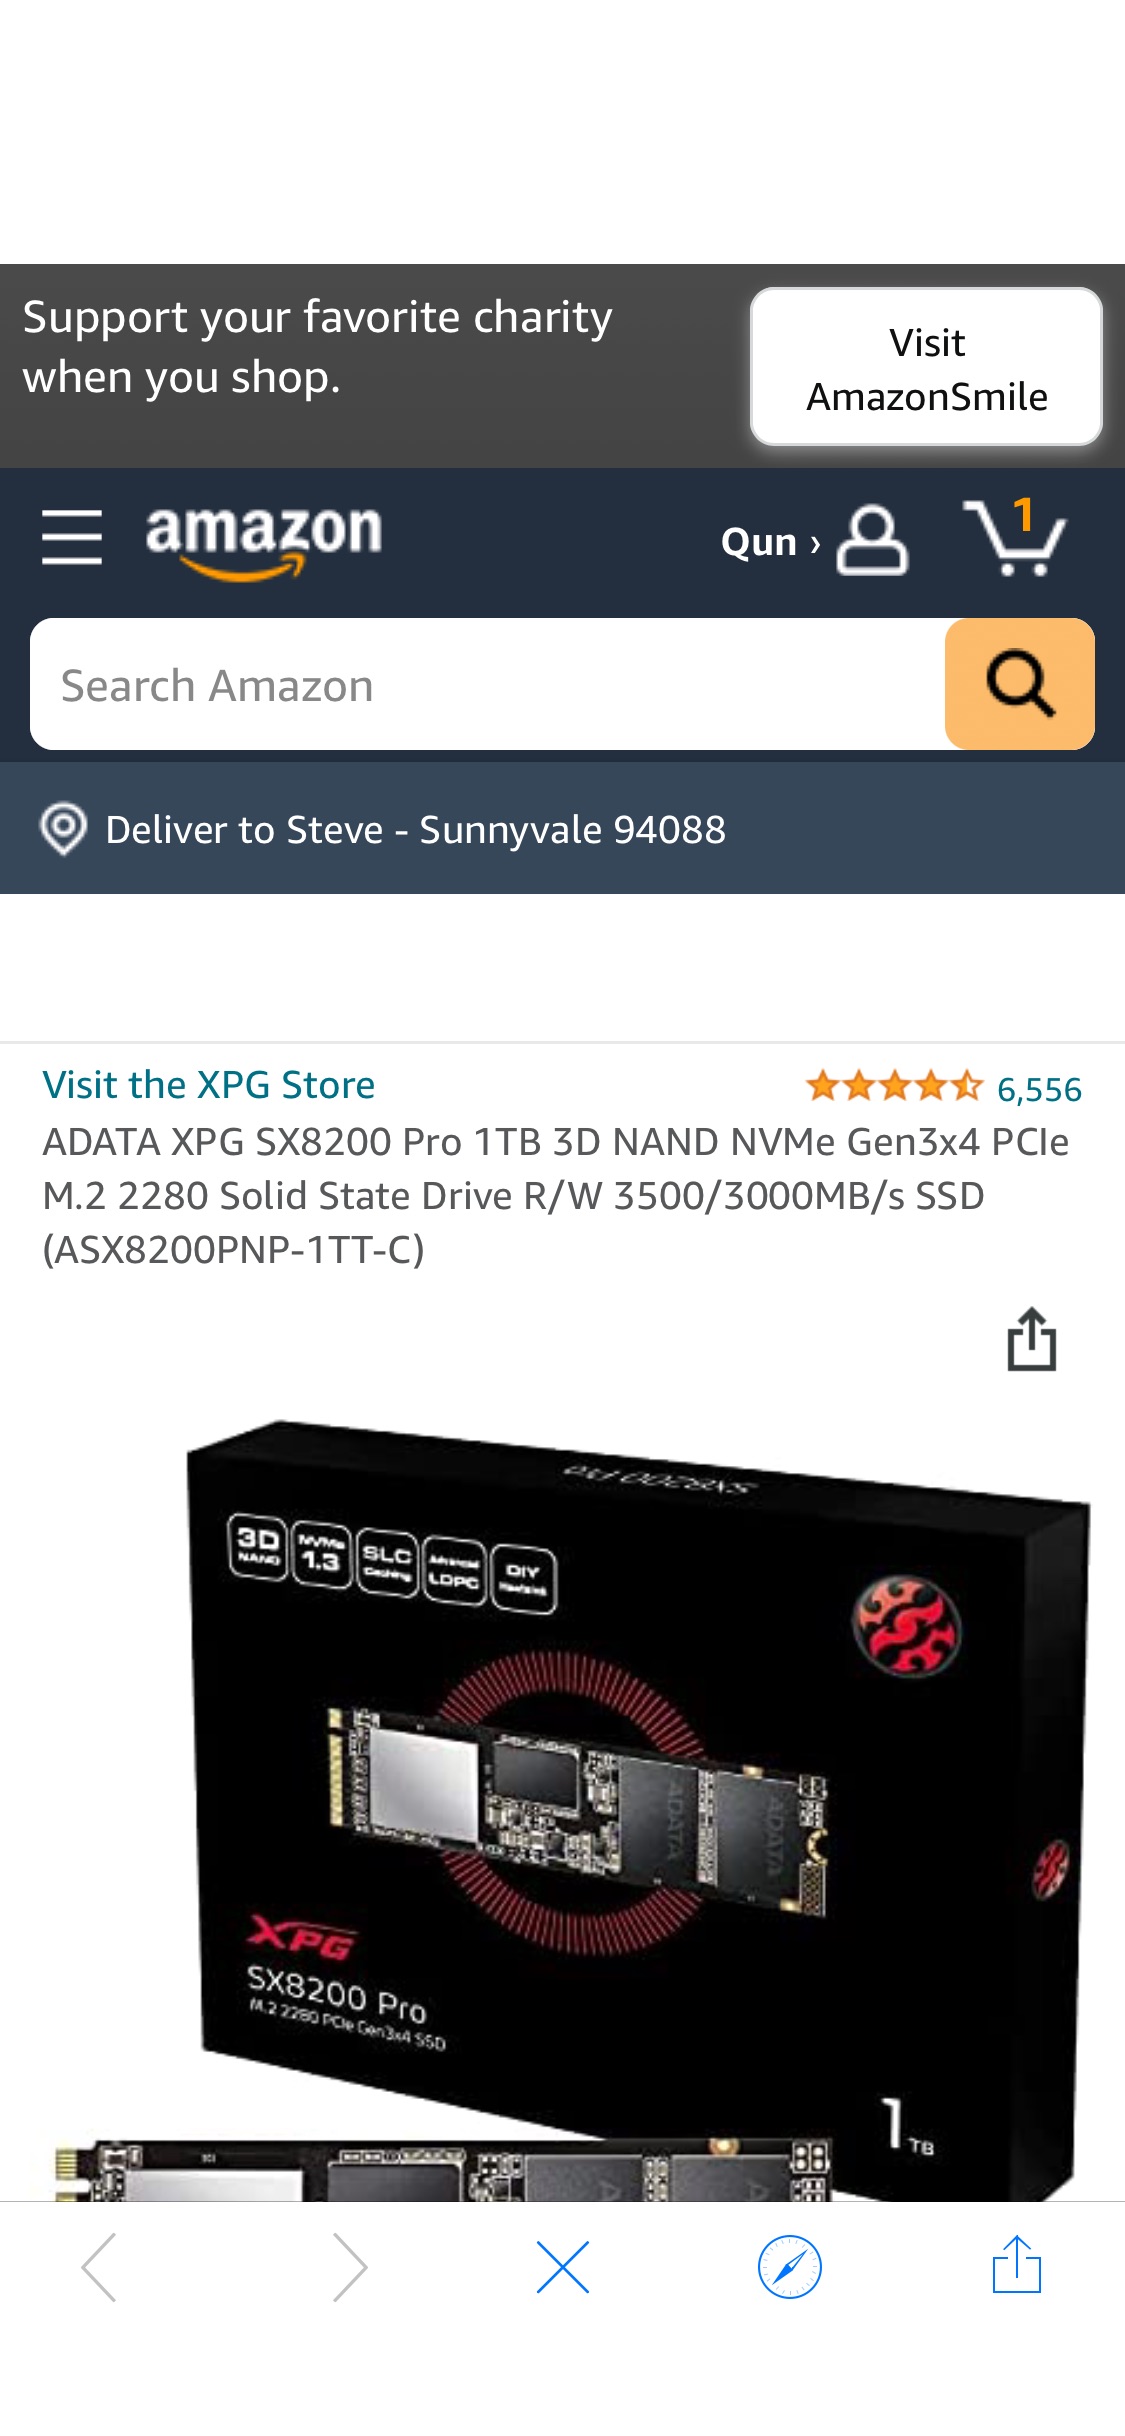 Amazon.com: ADATA XPG SX8200 Pro 1TB 3D NAND NVMe Gen3x4 PCIe M.2 2280 Solid State Drive R/W 3500/3000MB/s SSD (ASX8200PNP我-1TT-C) : Electronics